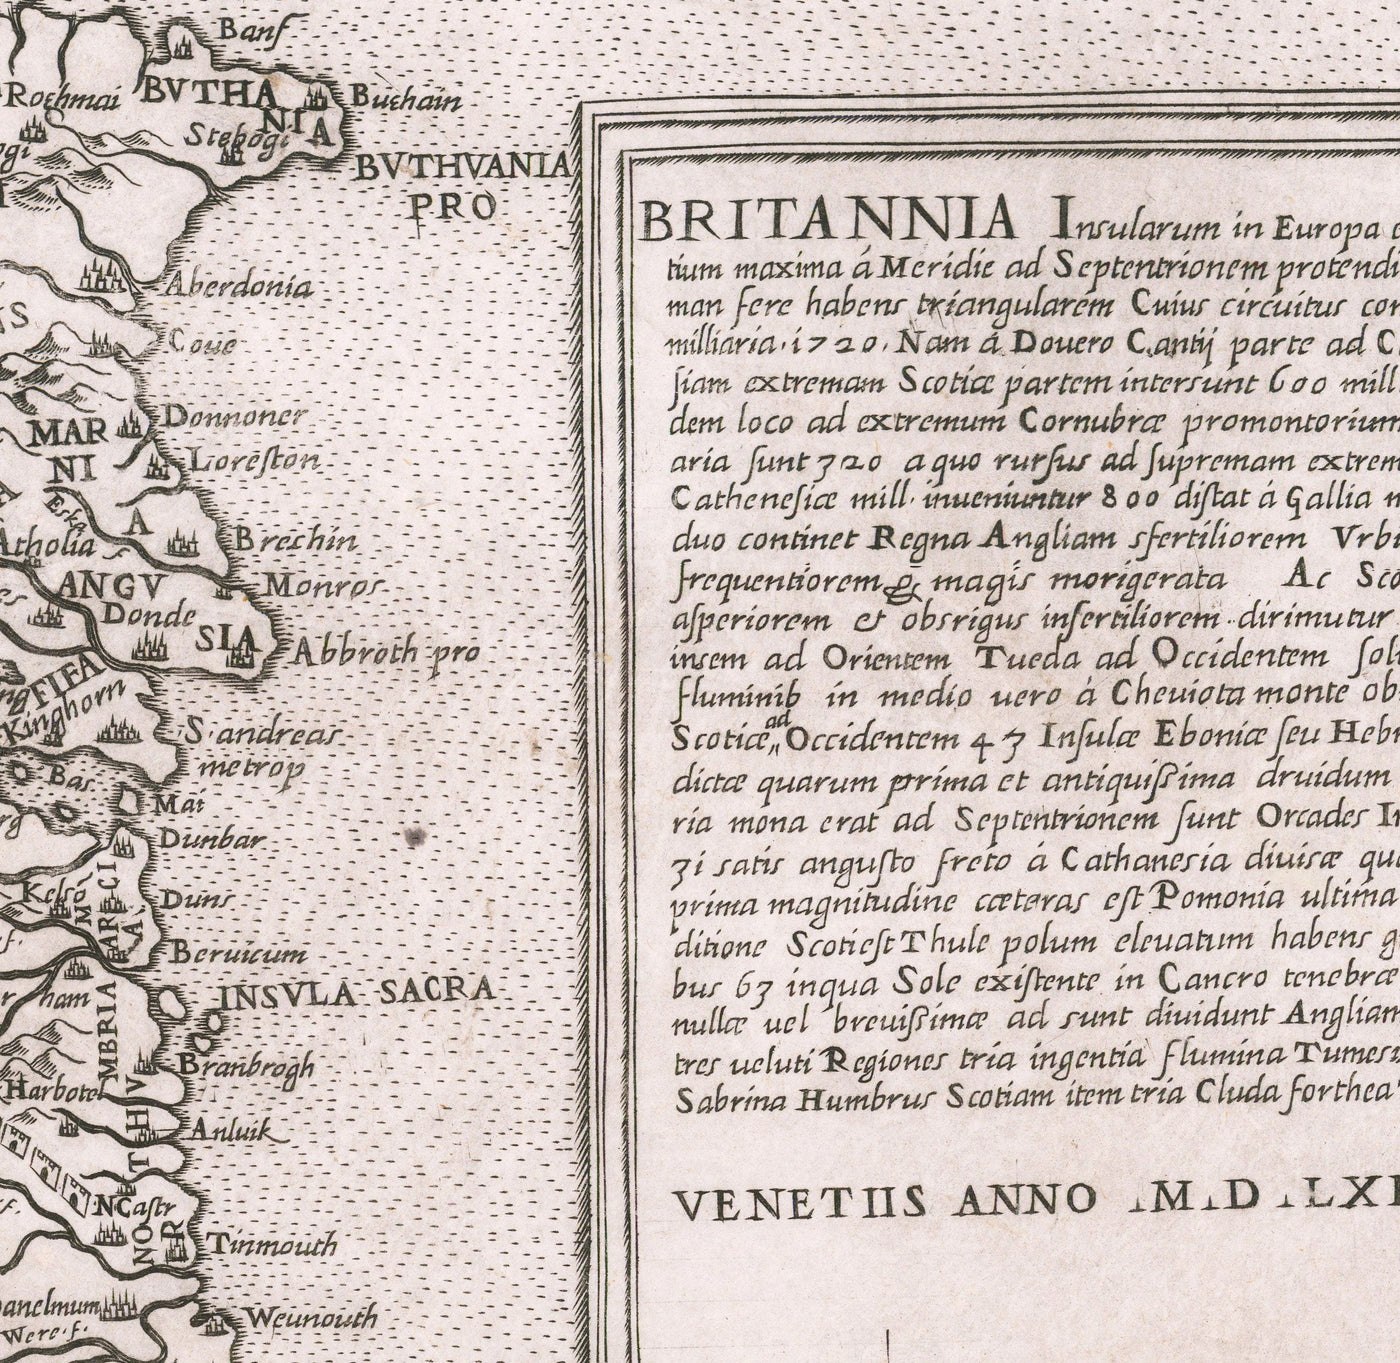 Sehr alte Karte der britischen Inseln, 1562 von George Lily - Erste echte Karte von Großbritannien und Irland - Bertelli & Lafreri-Version von George Lilys Karte